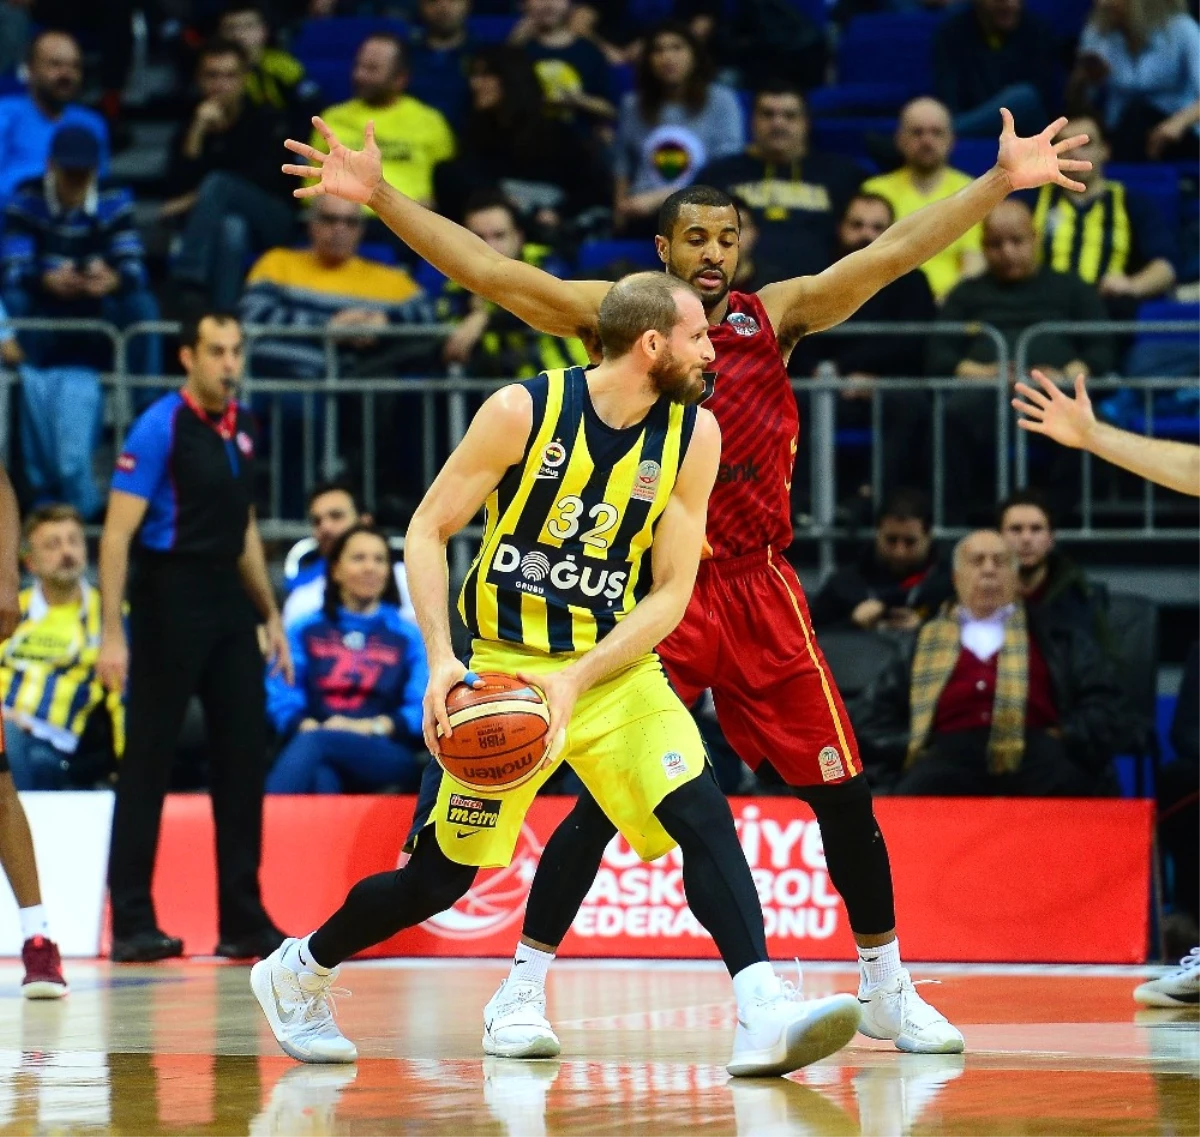 Tahincioğlu Basketbol Süper Ligi: Fenerbahçe Doğuş: 80 - Galatasaray Odeabank: 60